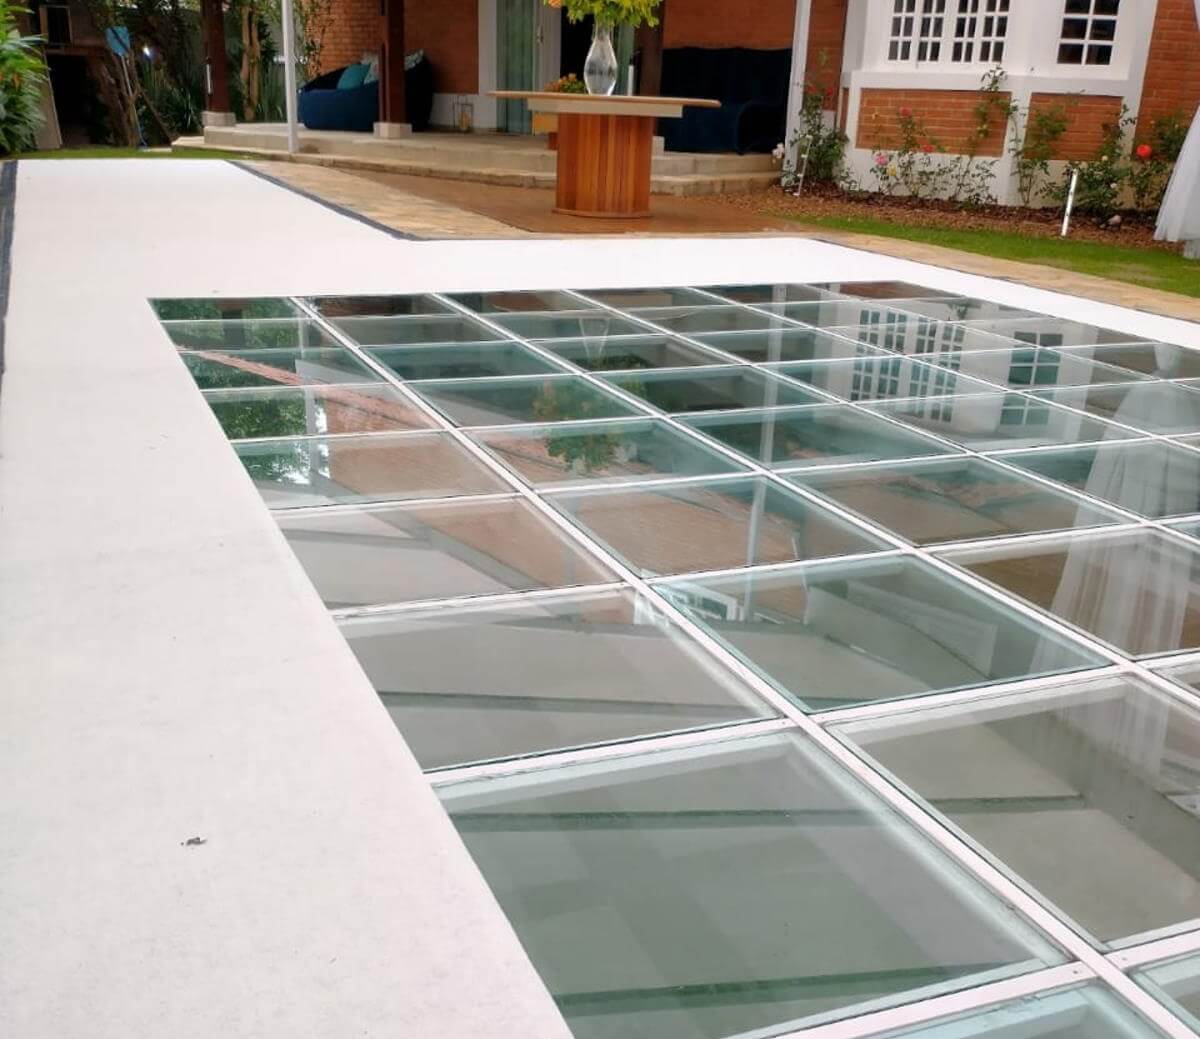 Aluguel de pista de vidro - Locação de pista em vidro - Cobertura transparente para eventos em São Paulo e Região Opções Coberturas